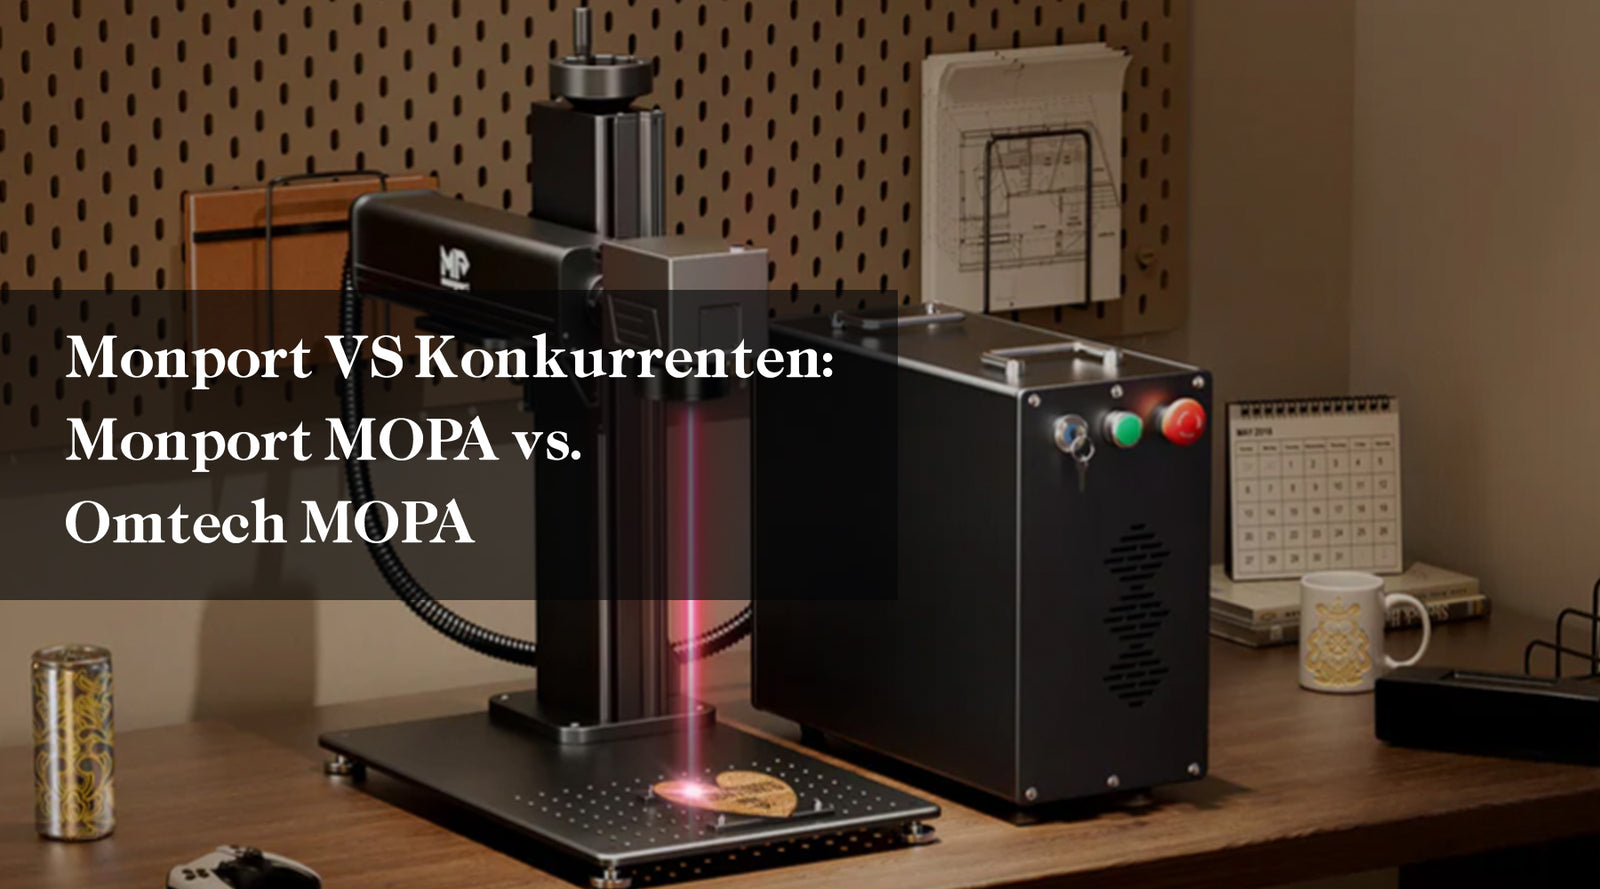 Monport VS Konkurrenten: Monport MOPA vs. Omtech MOPA